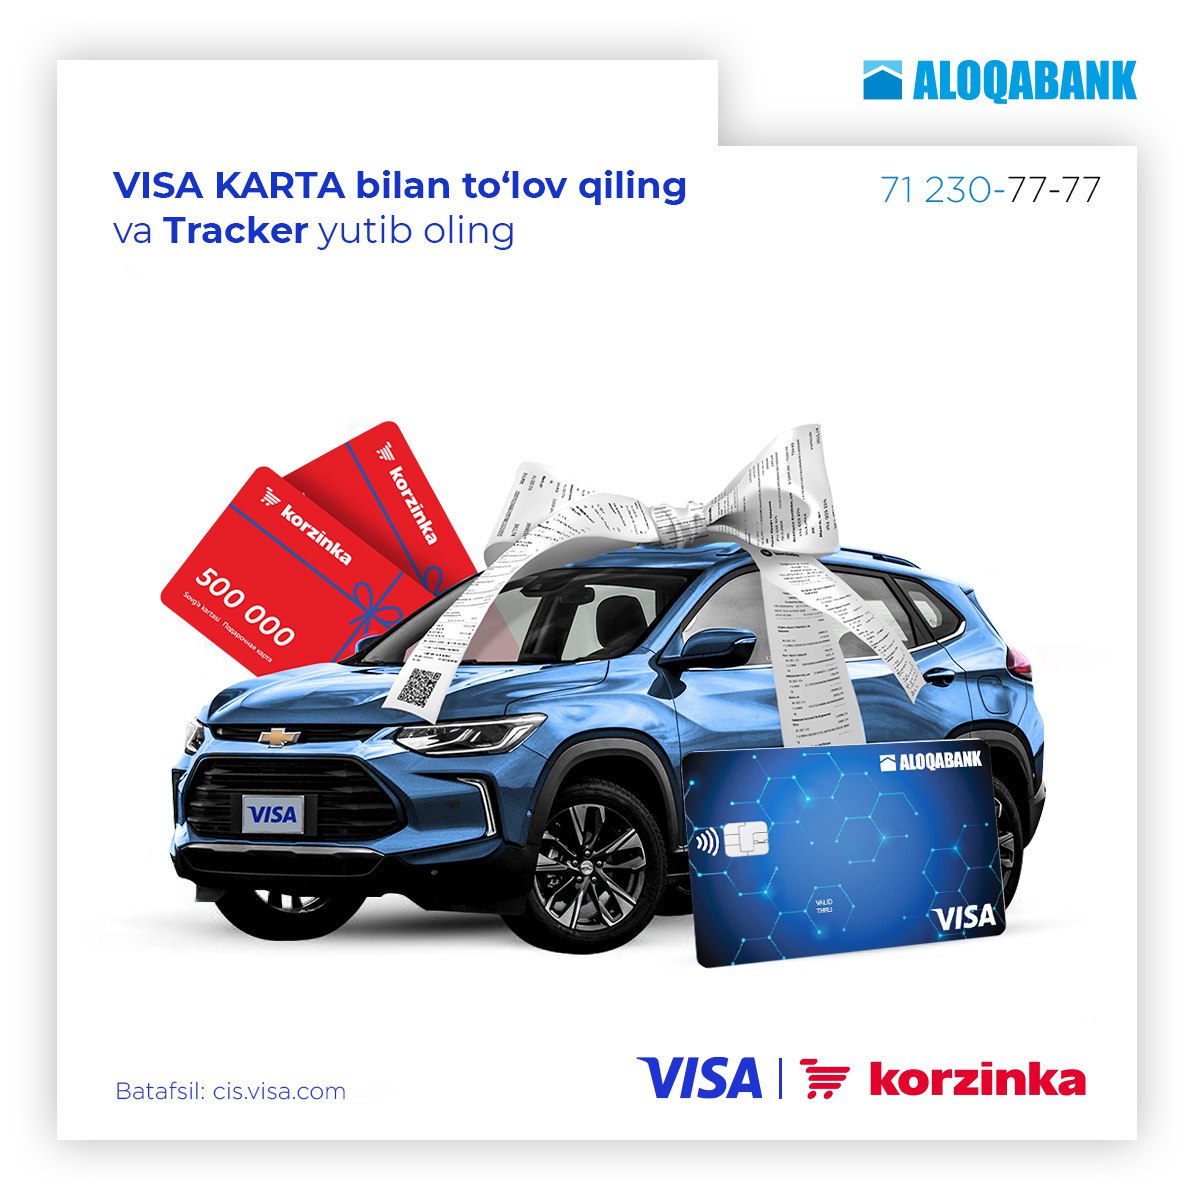 Хотите получить Chevrolet Tracker 2? Пользуйтесь картами Visa от Алокабанк и участвуйте в акции до 21 марта!